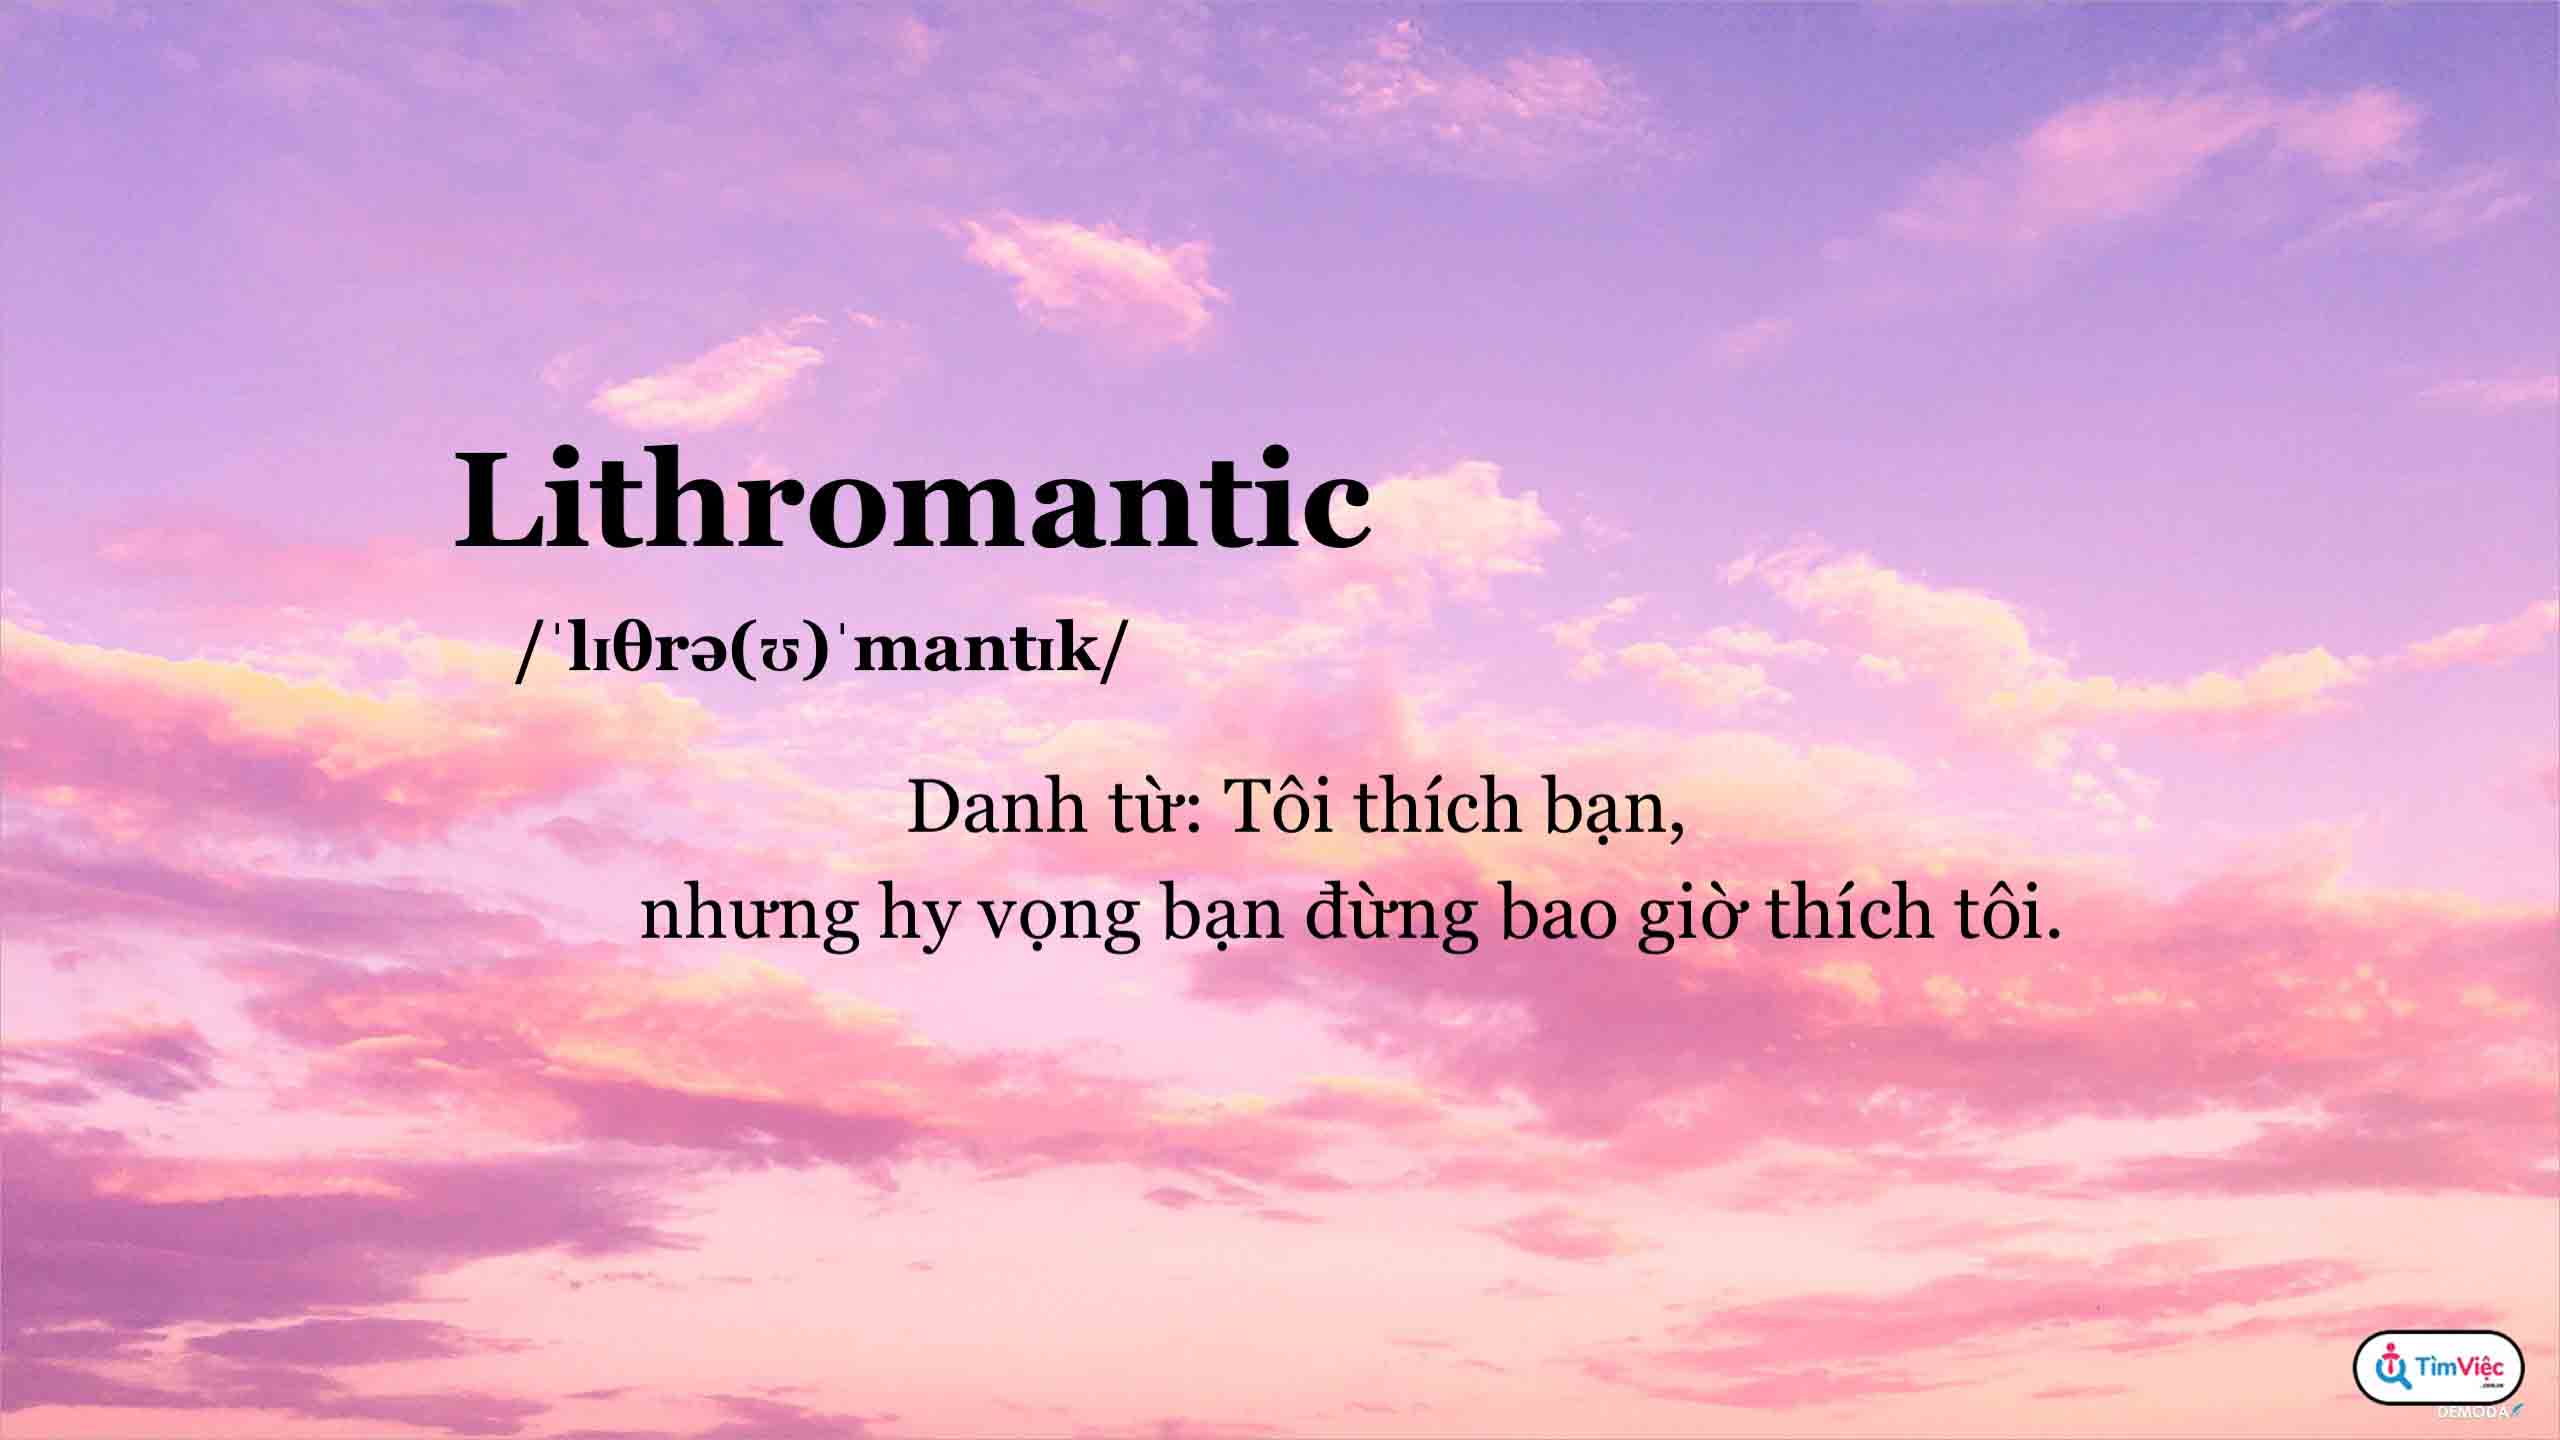 Lithromantic - Hội chứng “Crush xin cậu đừng yêu tôi”